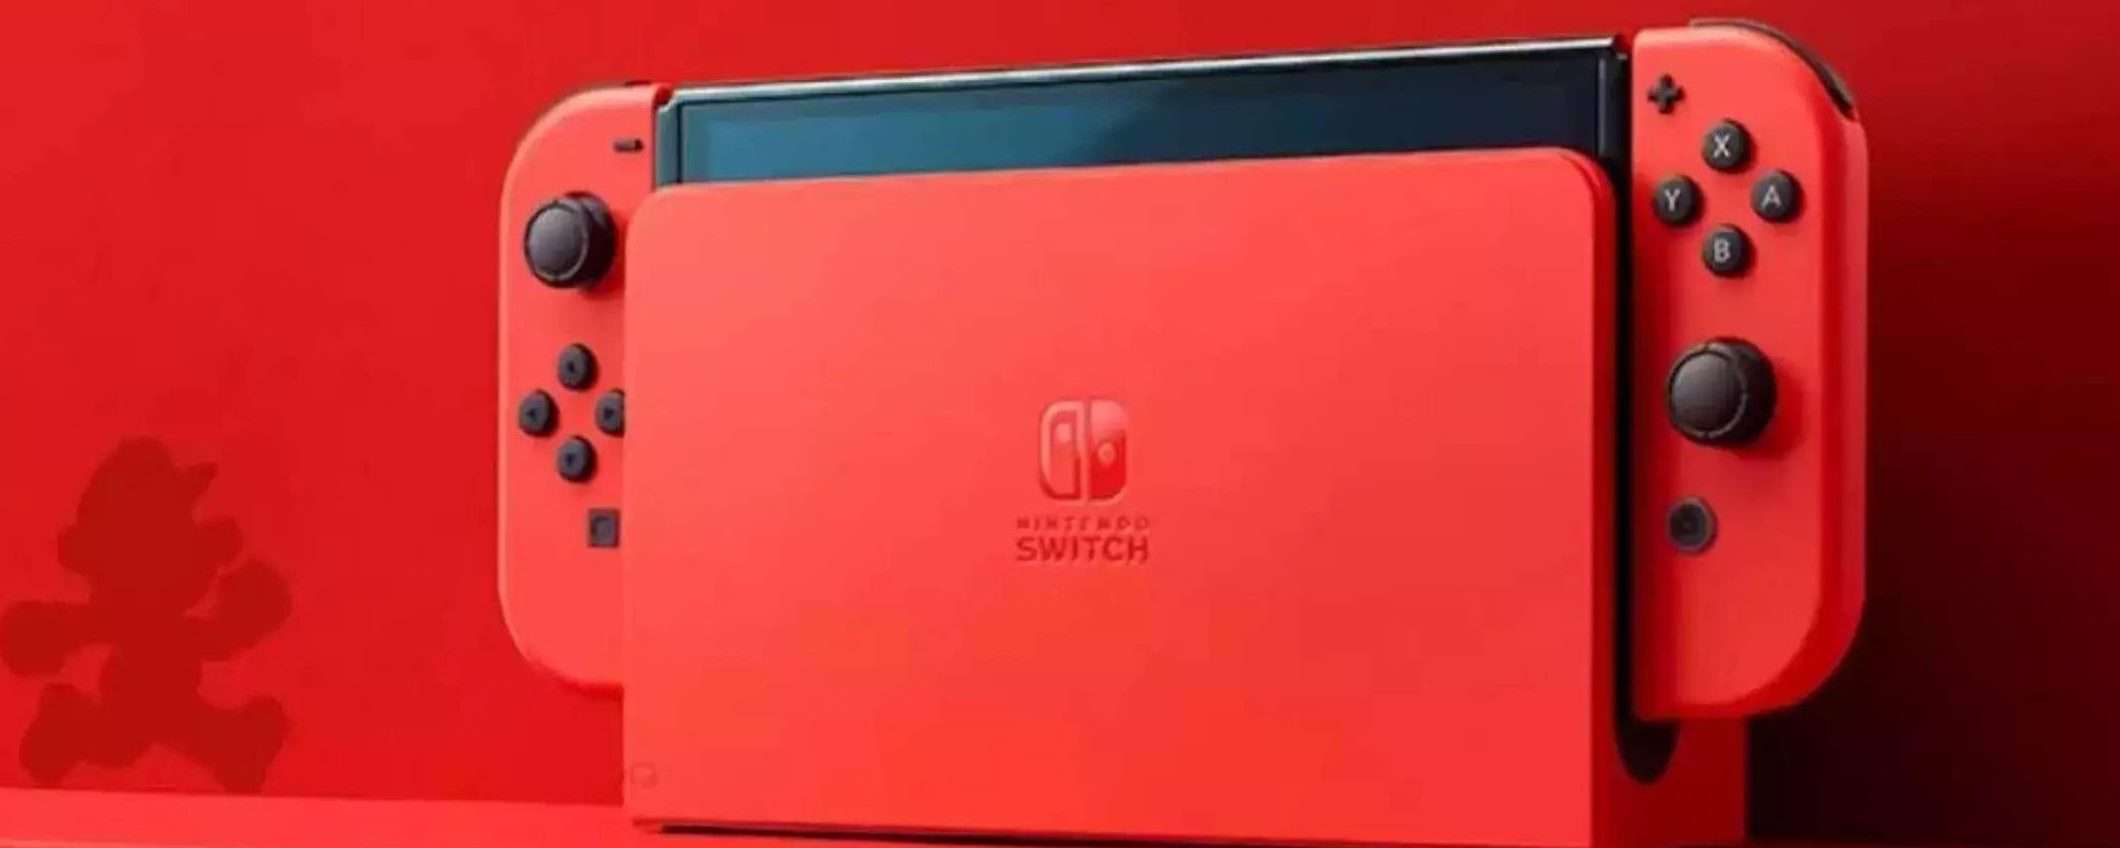 Nintendo Switch OLED: costa meno di 292€ su Amazon, prendila ORA